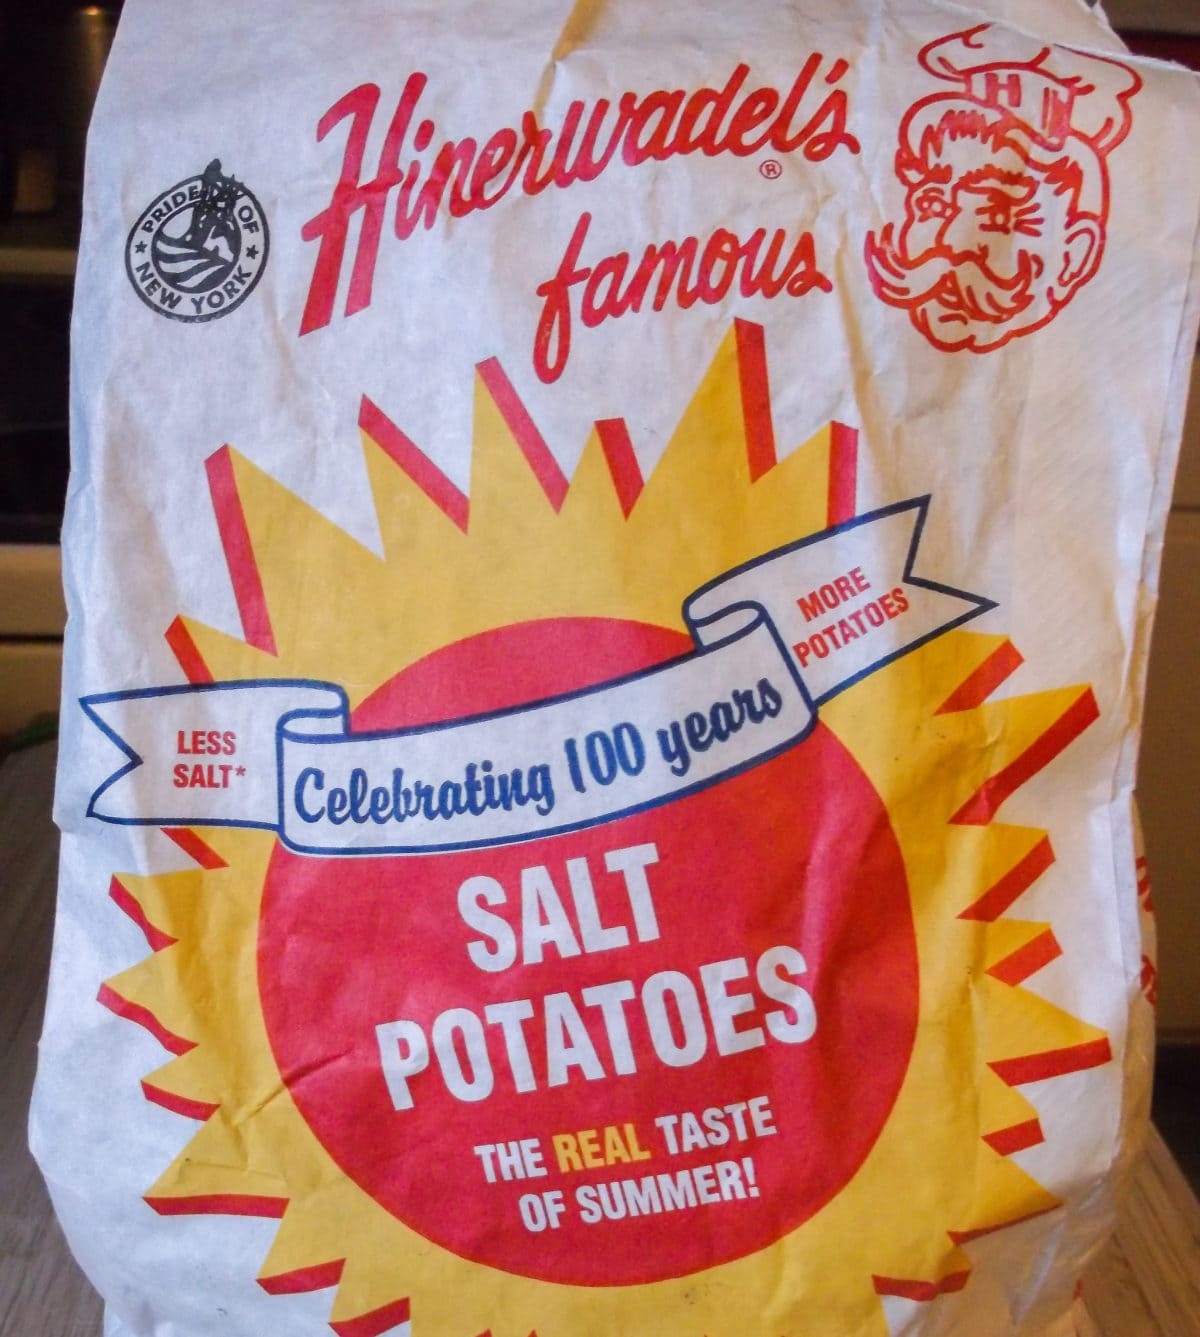 Bag of Hinerwadel's potatoes